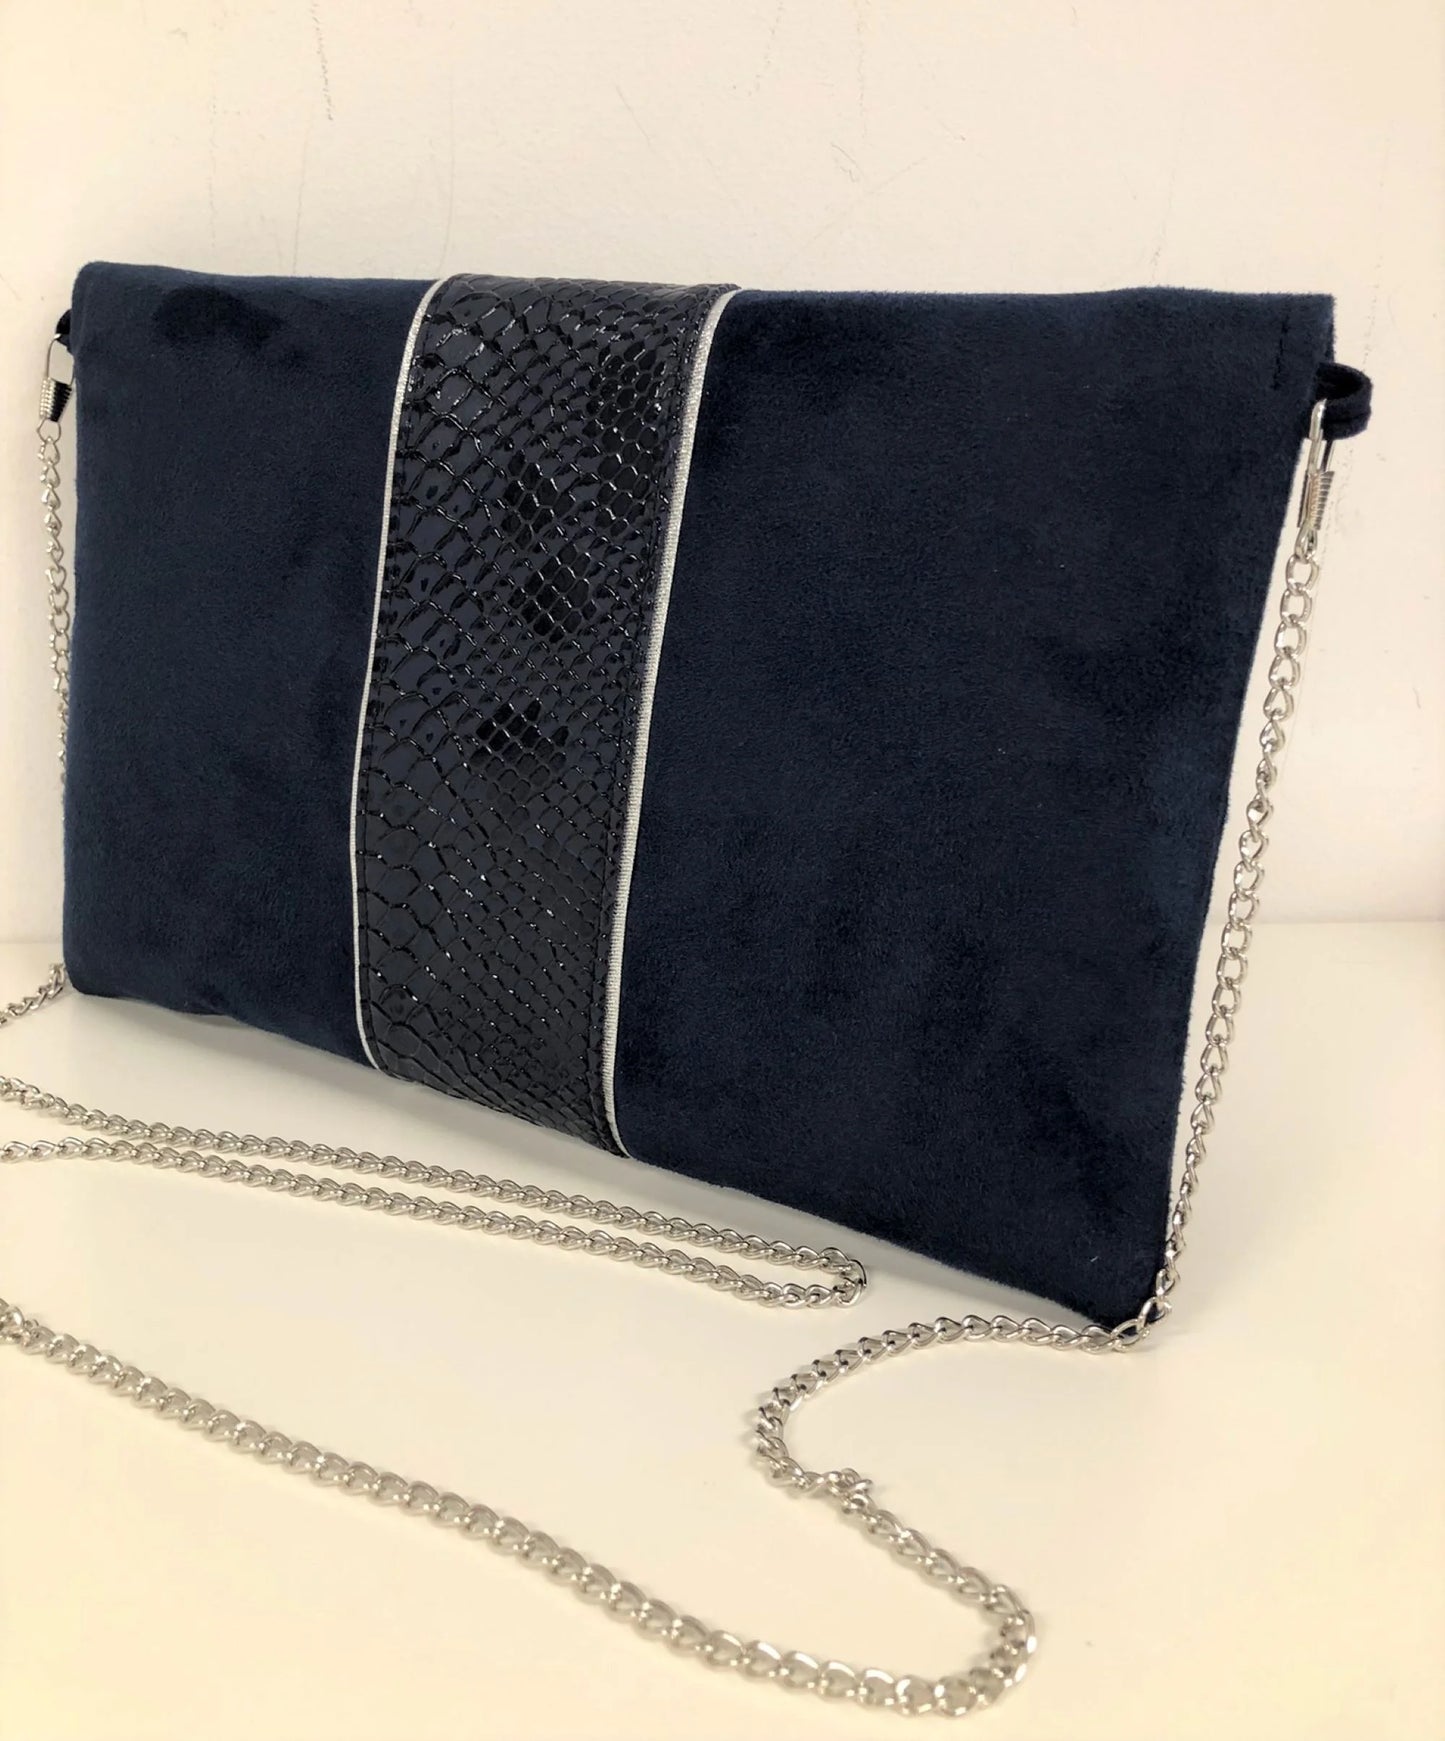 Vue de dos du sac pochette Isa bleu marine reptile à liseré argenté, avec sa chainette amovible.